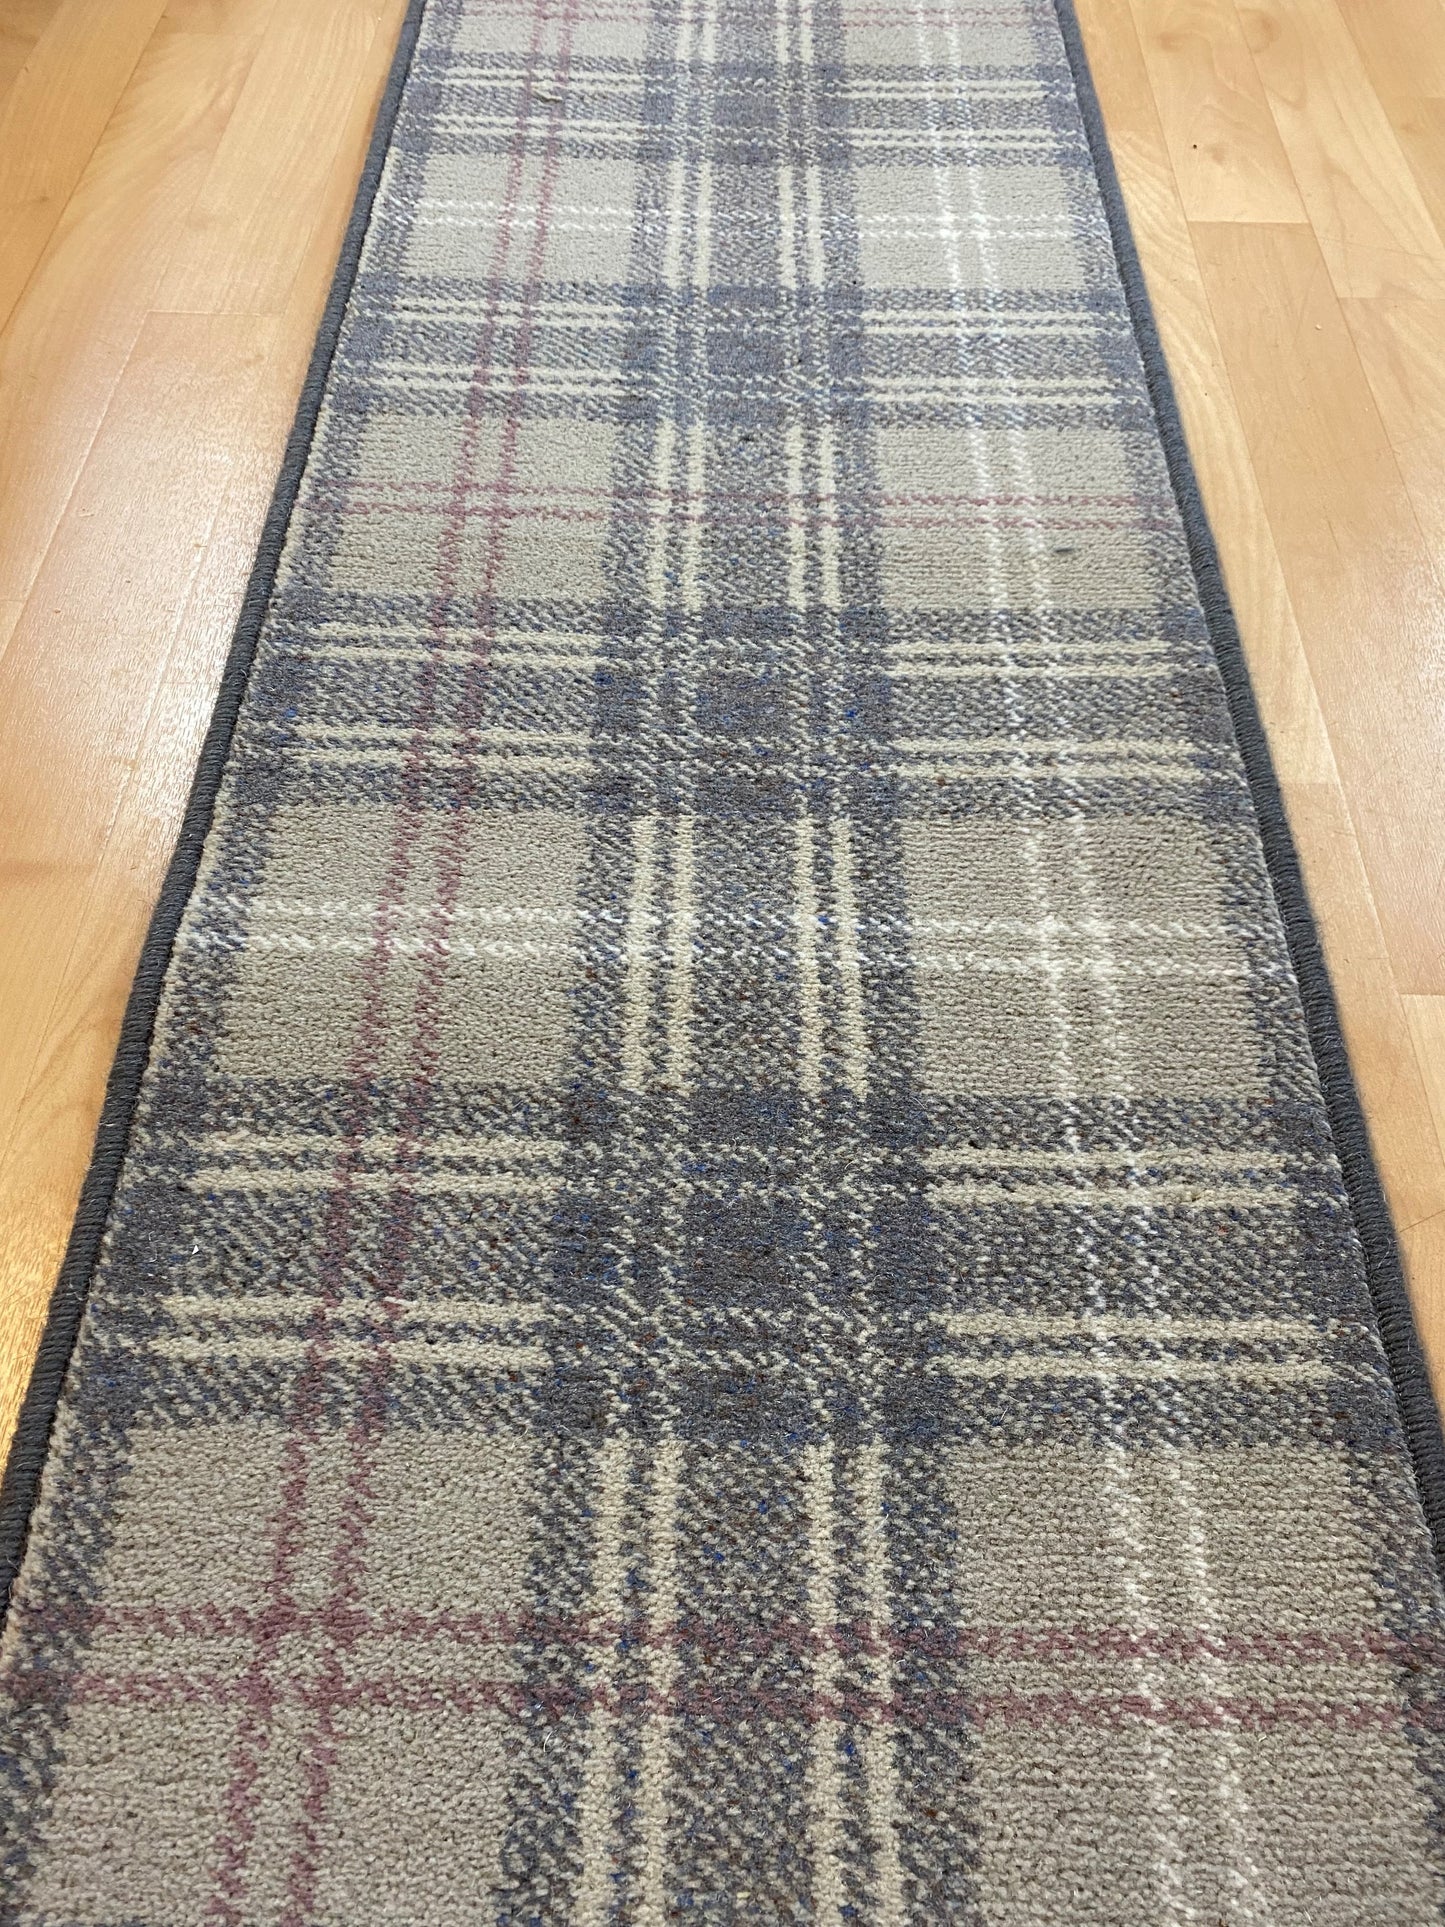 Ulster Carpets Braeburn Estuary Stair Runner 5.10m x 16" (41cm) wide